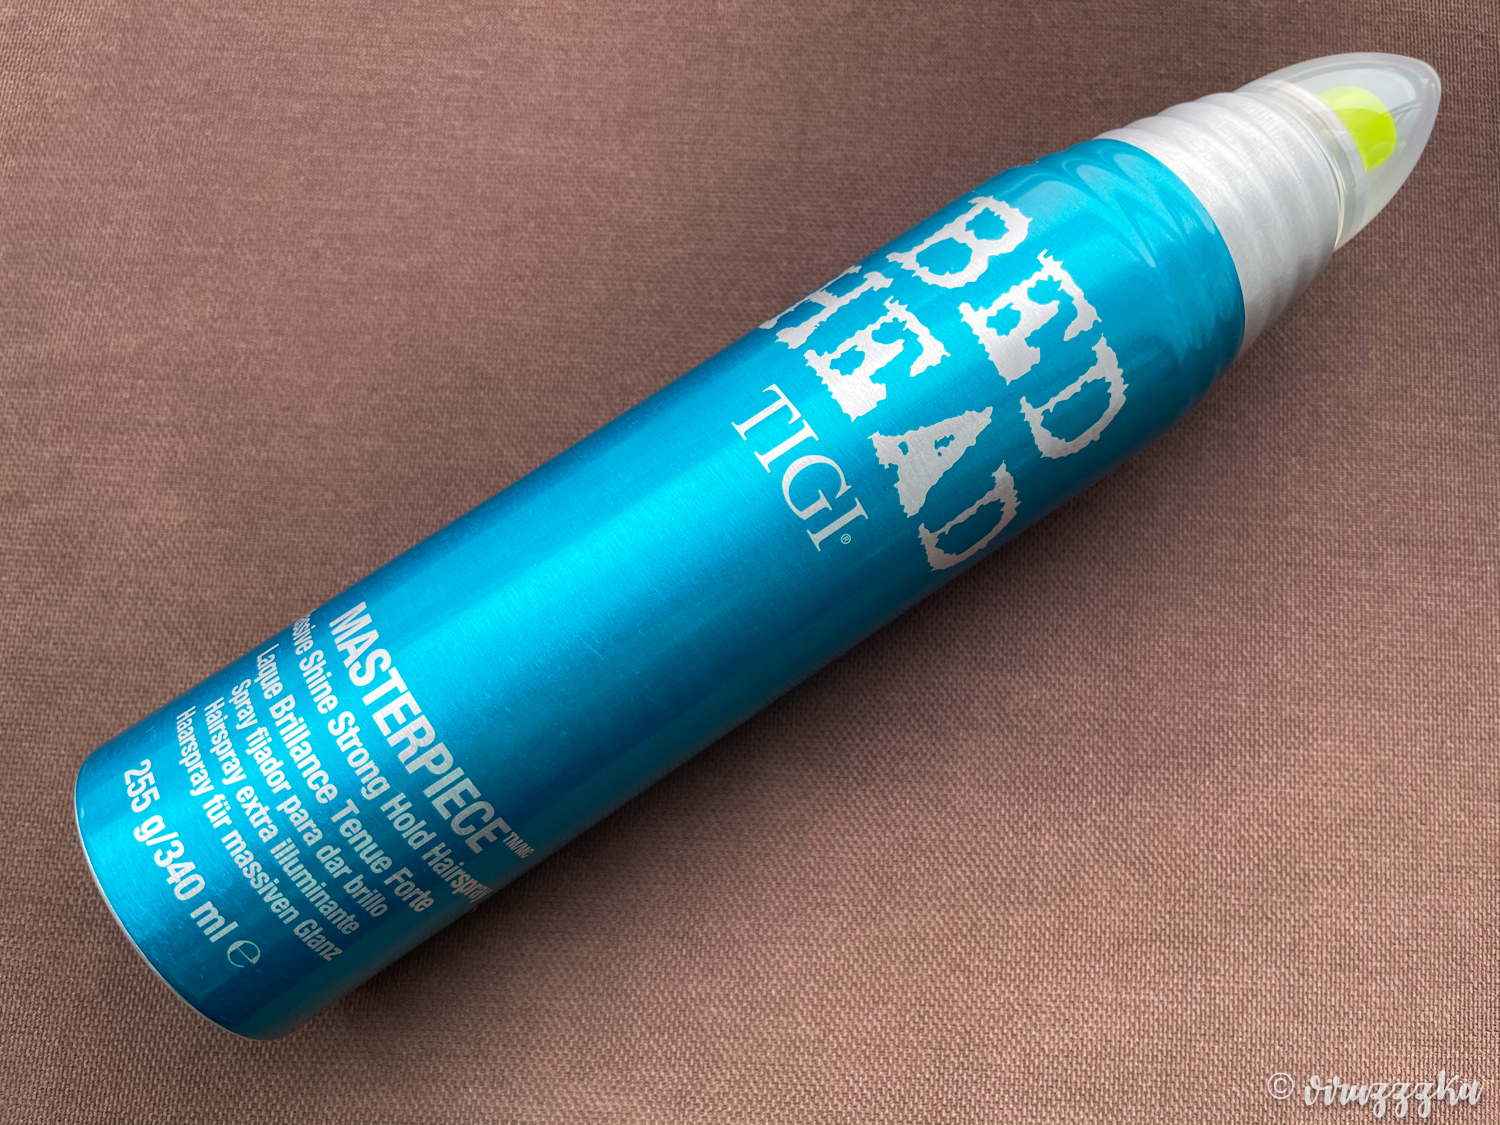 TIGI Bed Head Masterpiece Hairspray Review